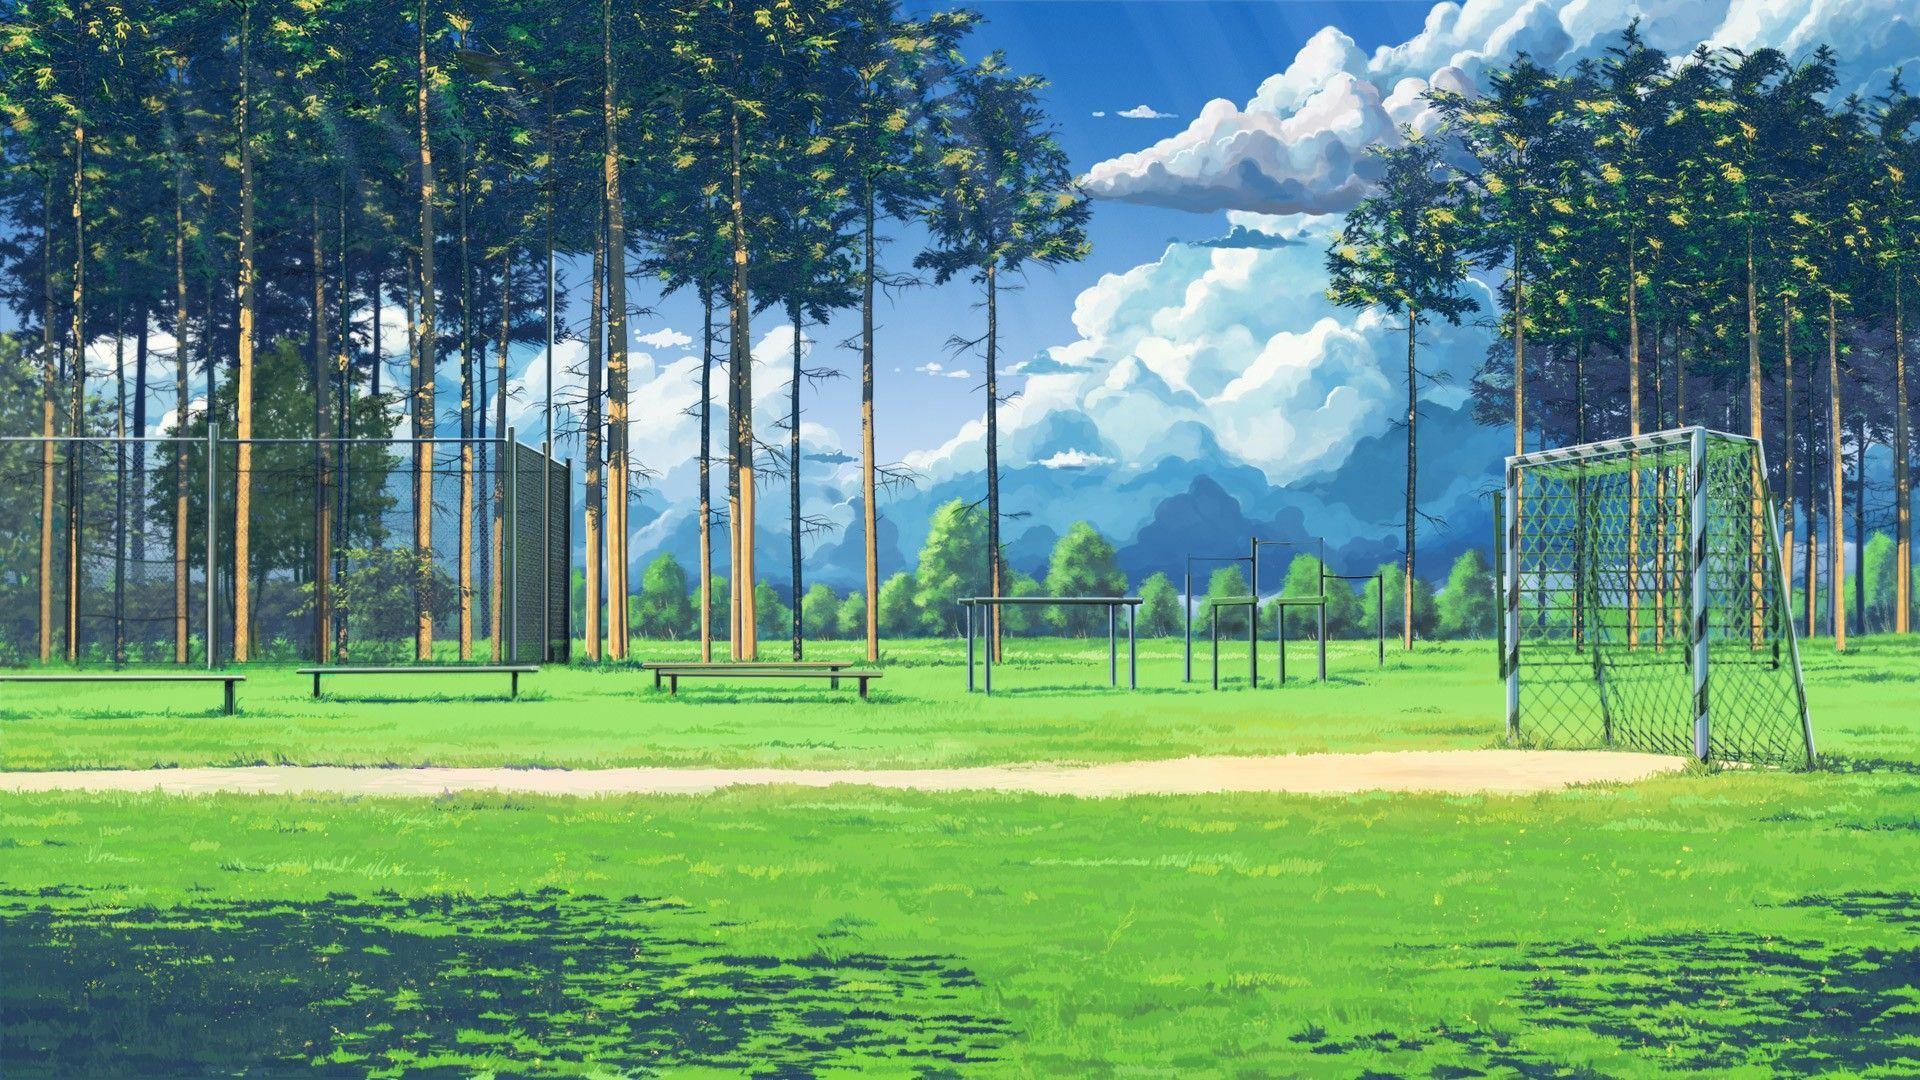 Anime Grass GIFs | Tenor